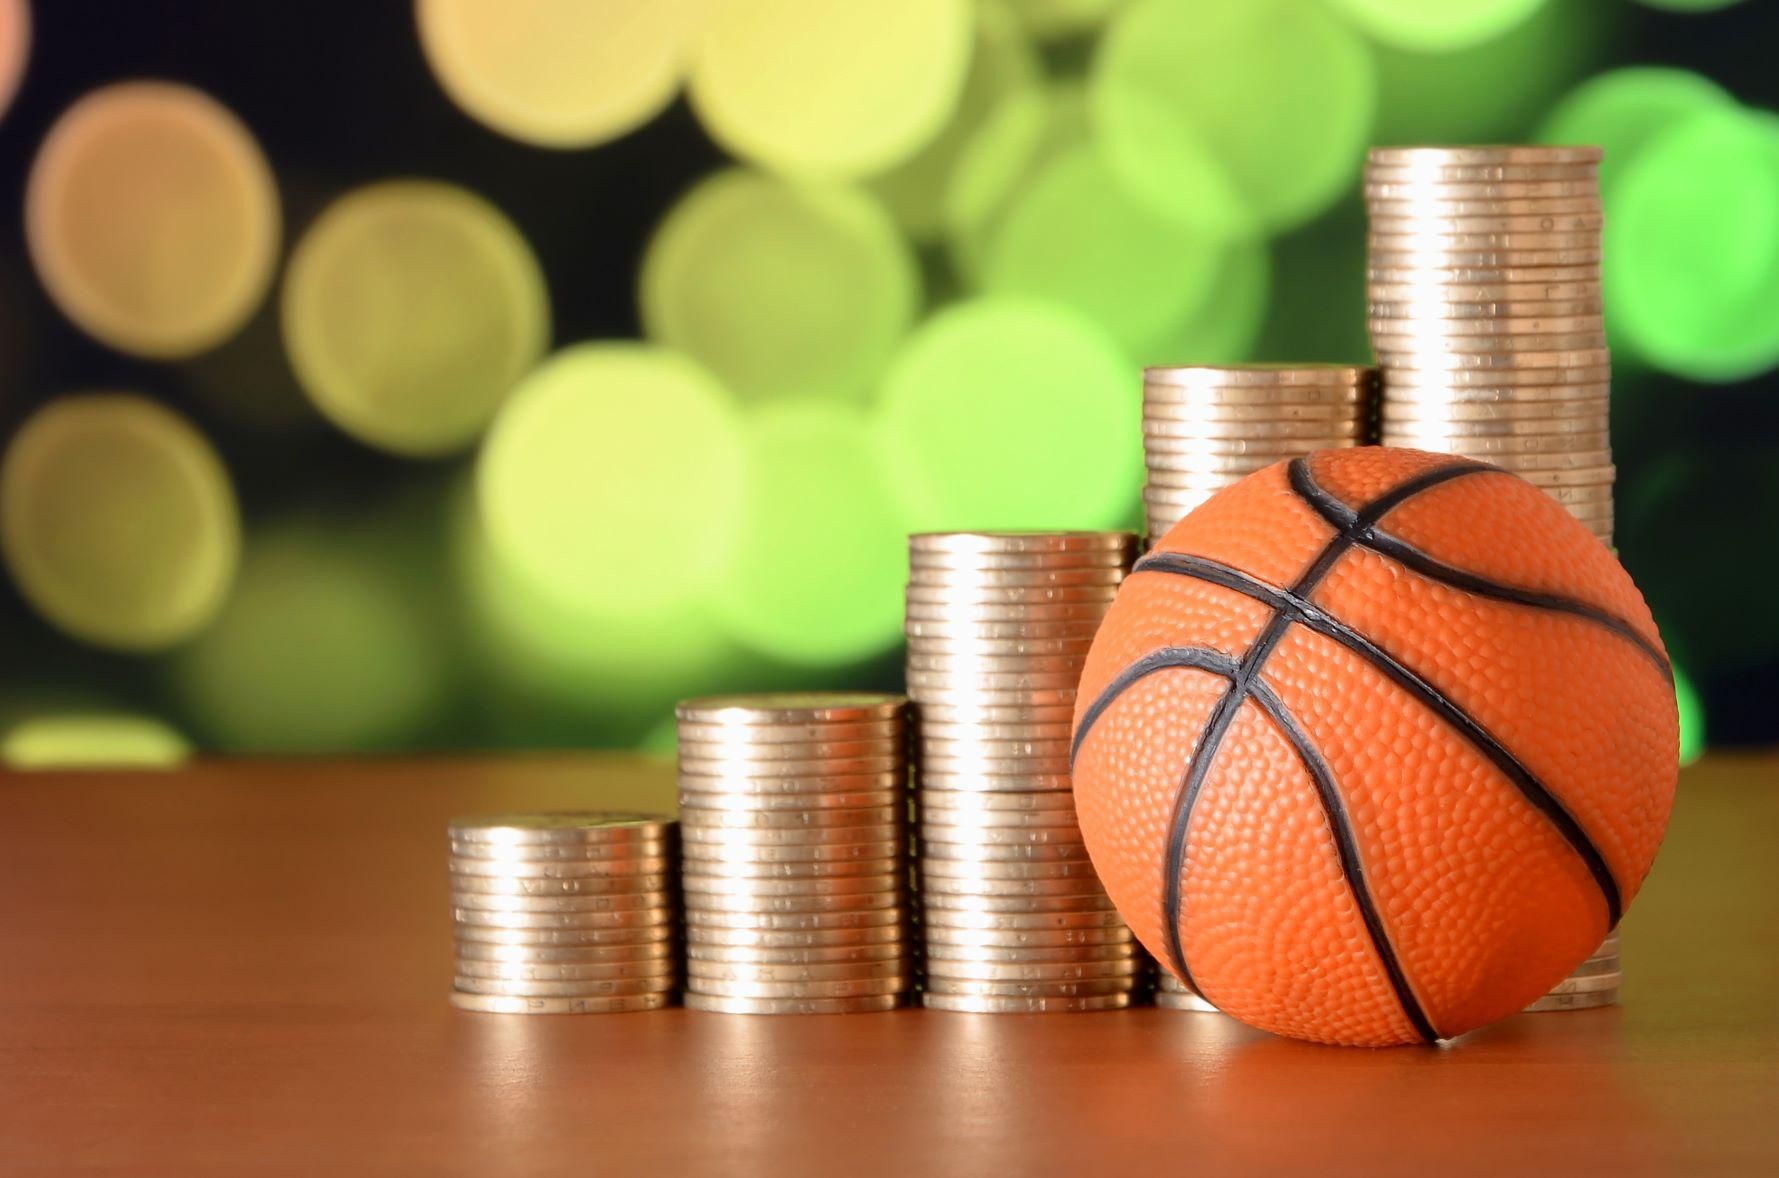 Kosárlabda és pénz